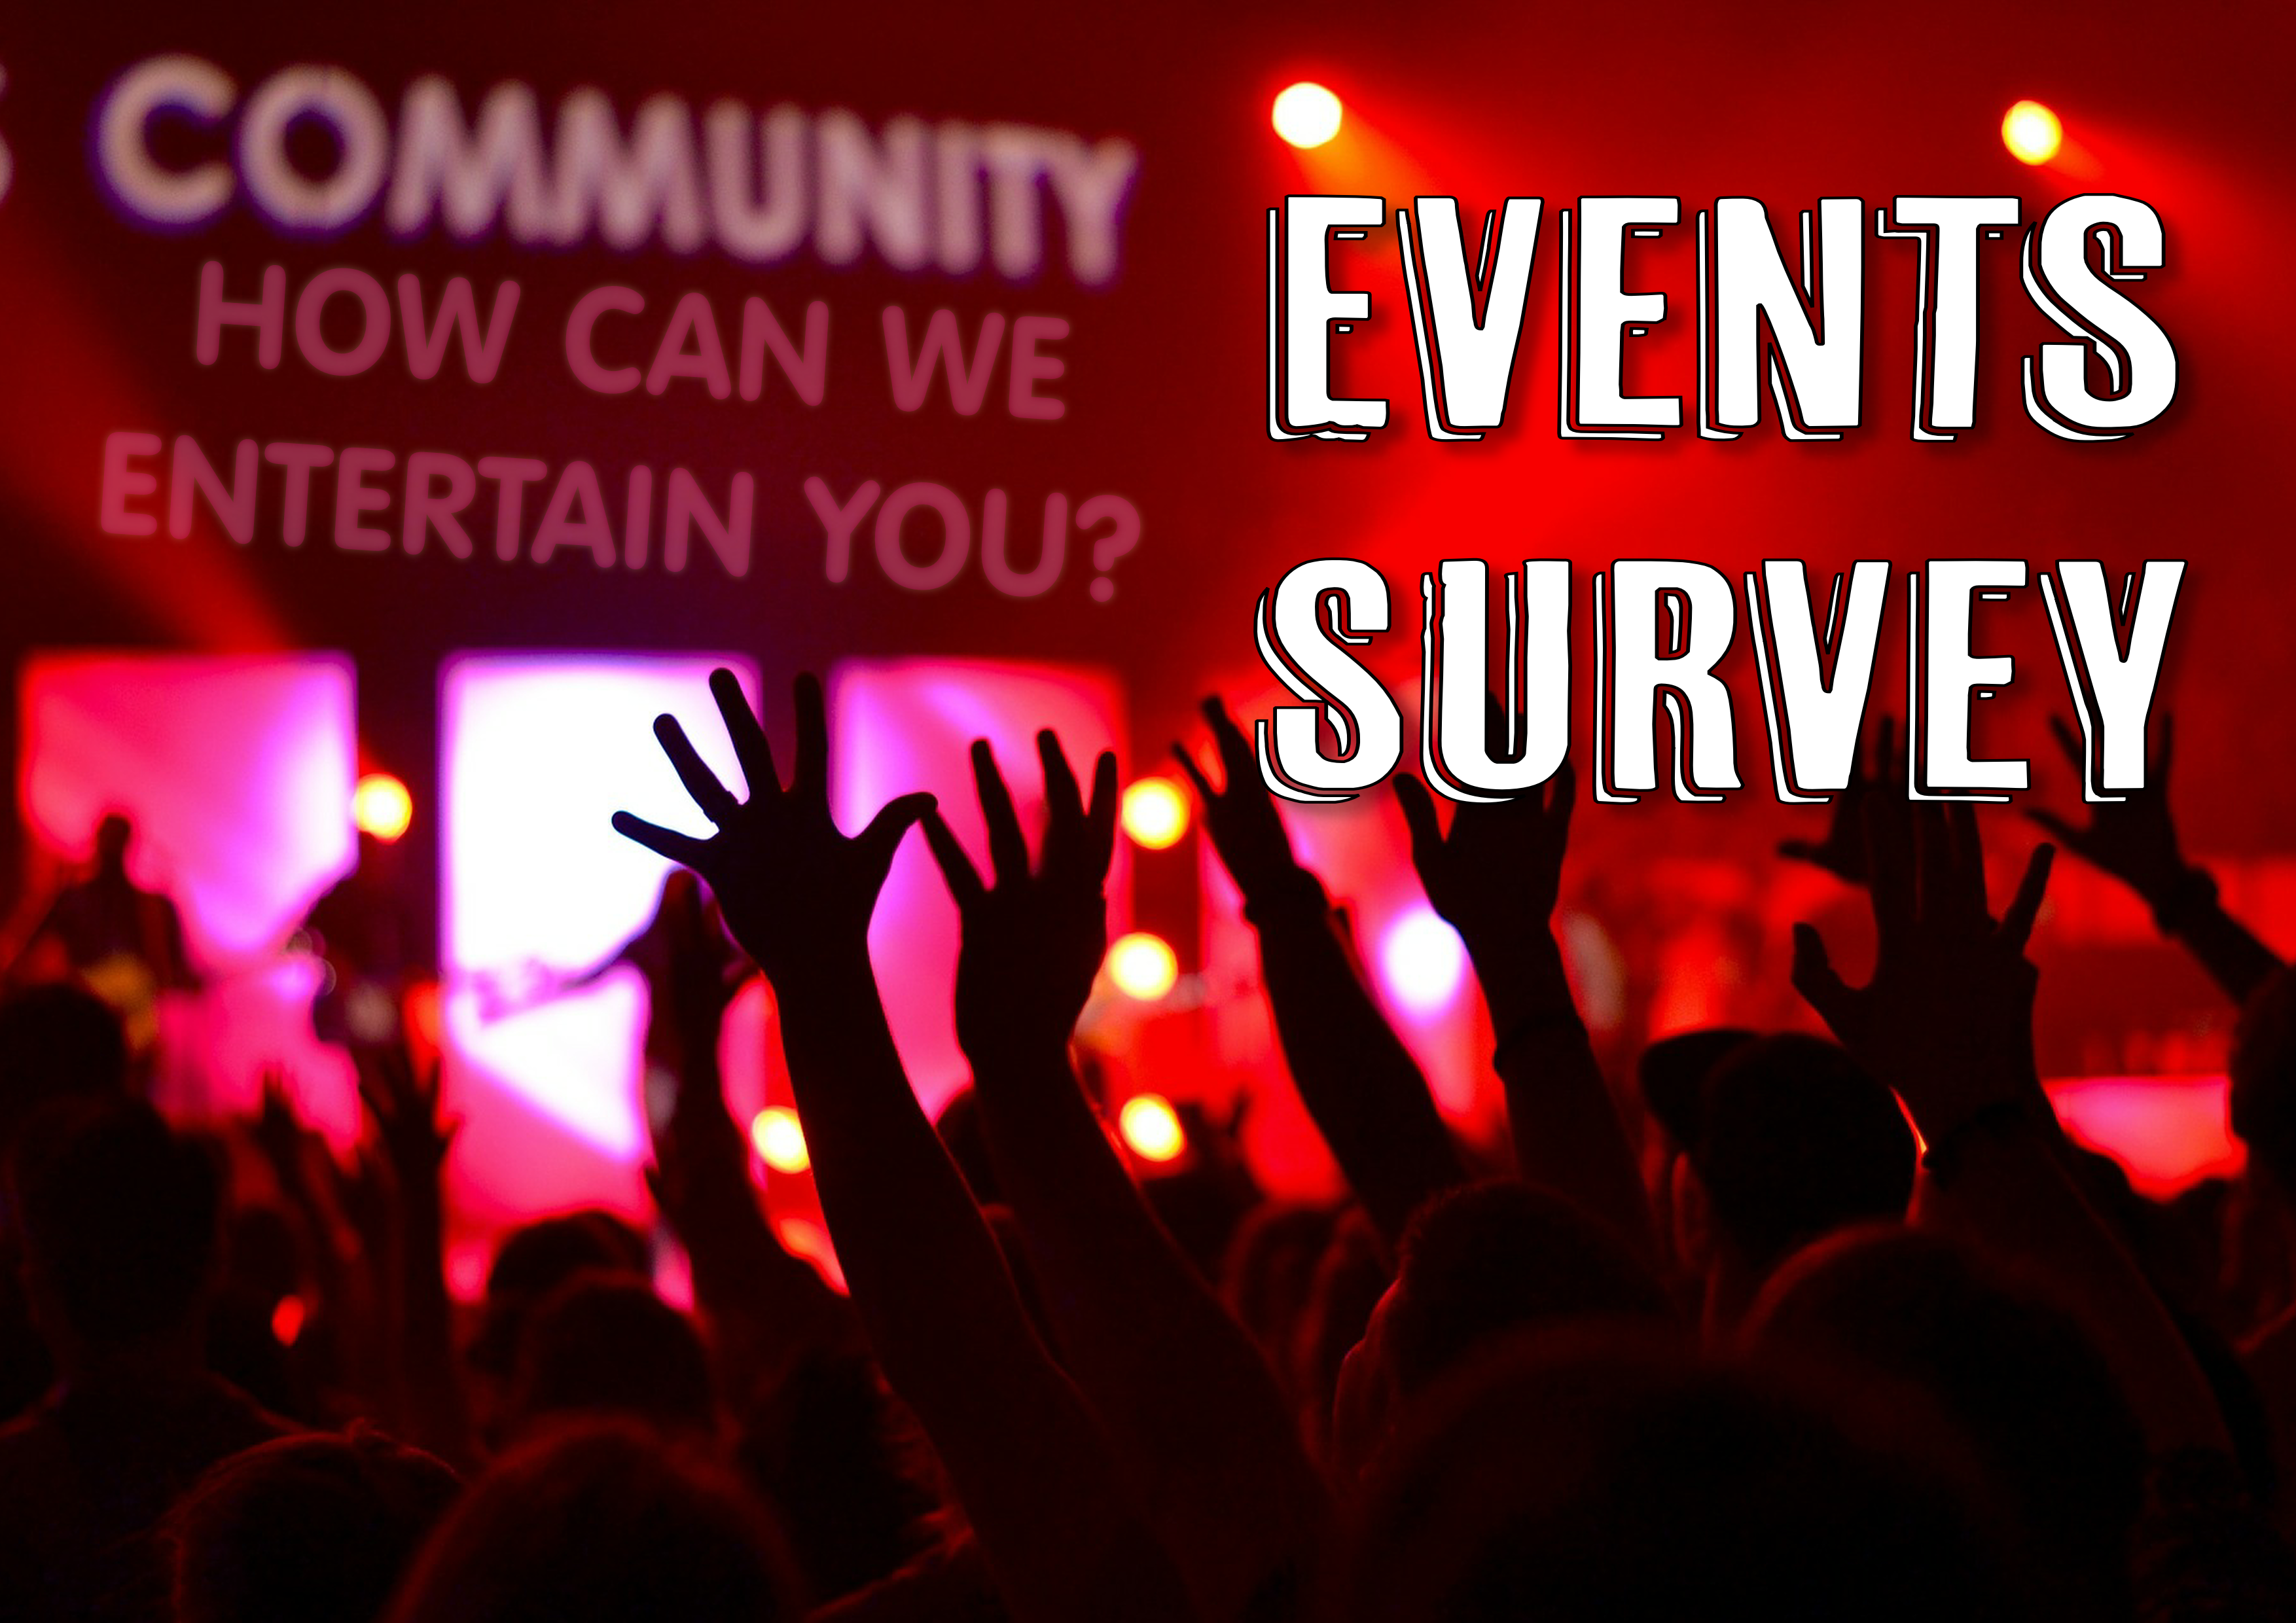 Community Events Survey